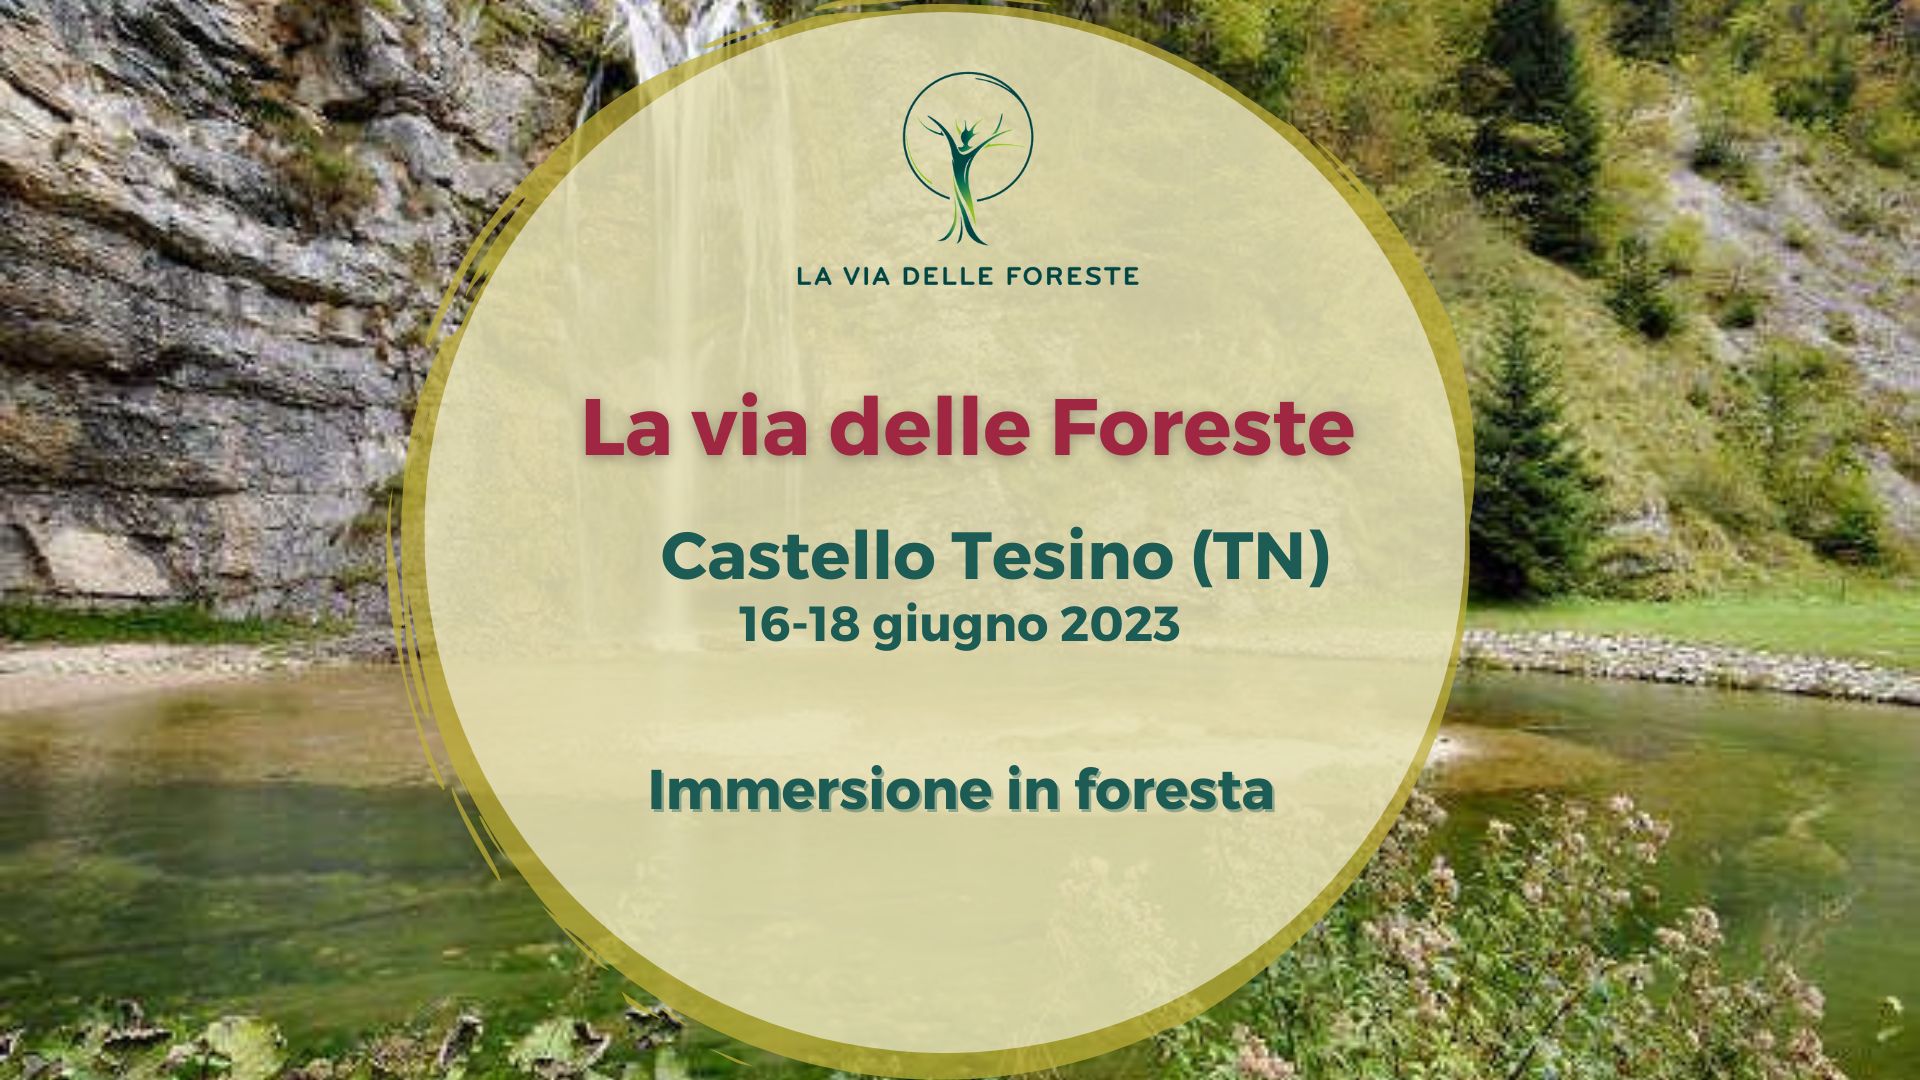 LGV cover Tesino foresta